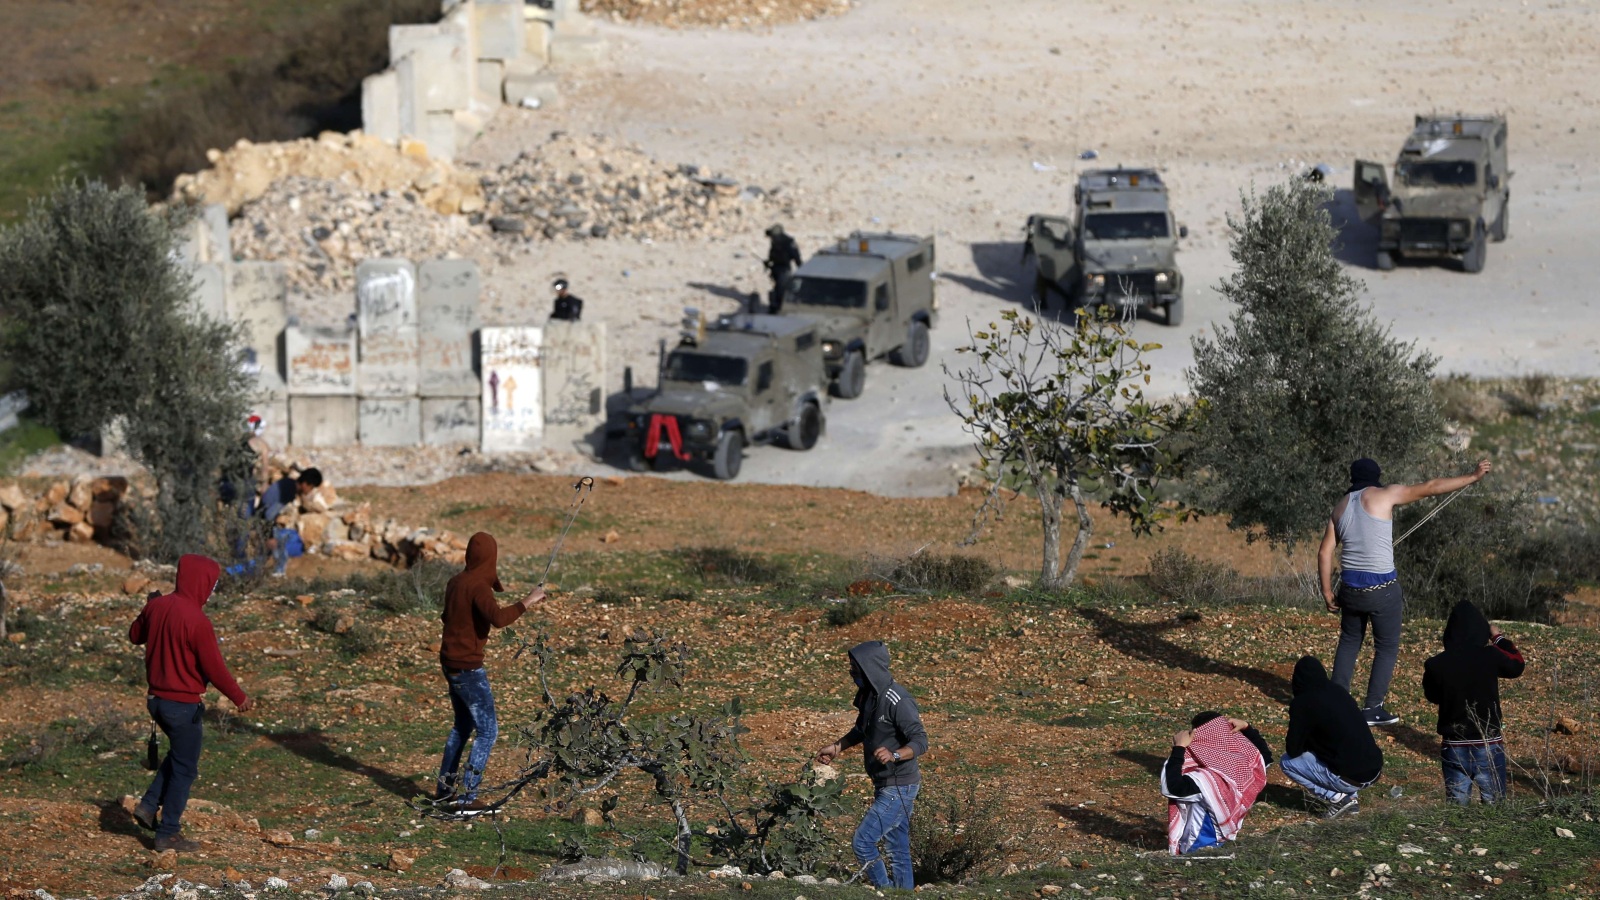 شبان فلسطينيون يقذفون عربات جيش الاحتلال بالحجارة بالقرب من سجن عوفر في بلدة بيتونيا (الفرنسية)